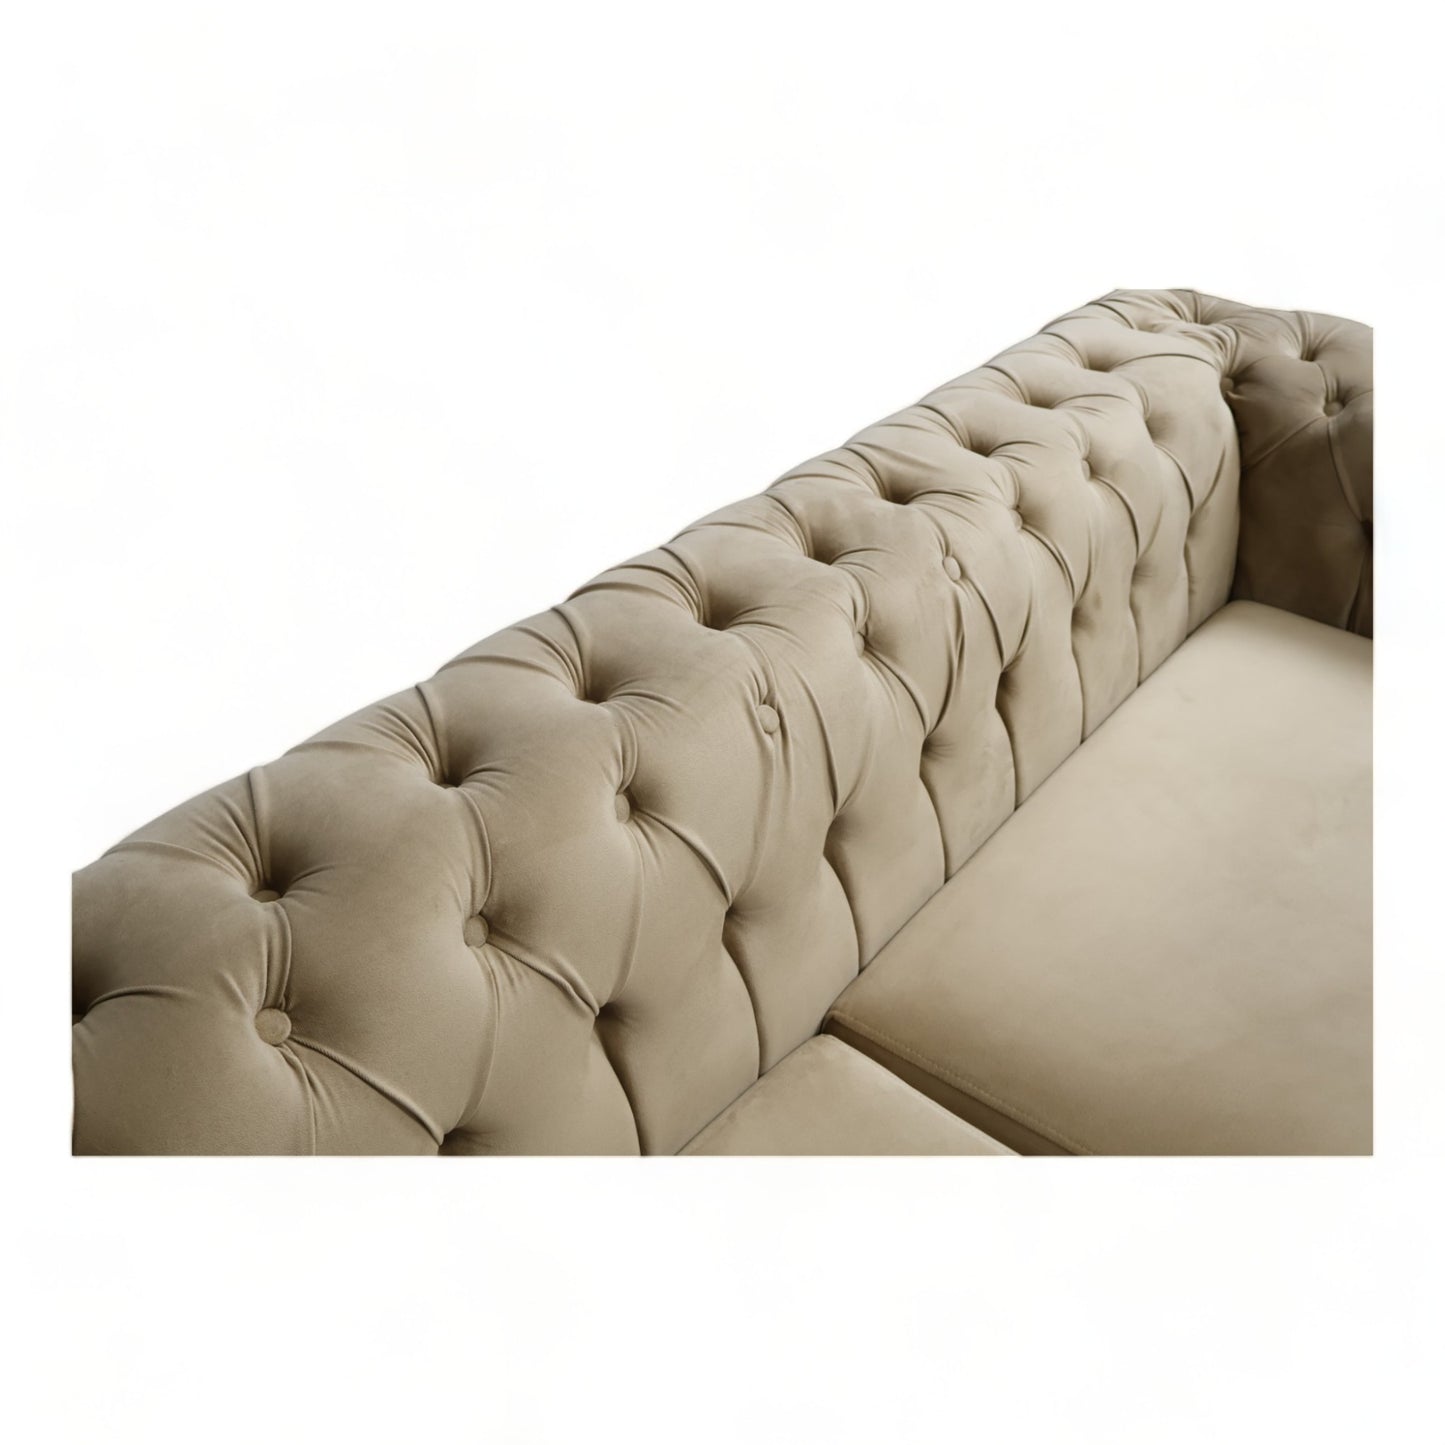 Nyrenset | Gyllen velur Chester design 2-seter sofa